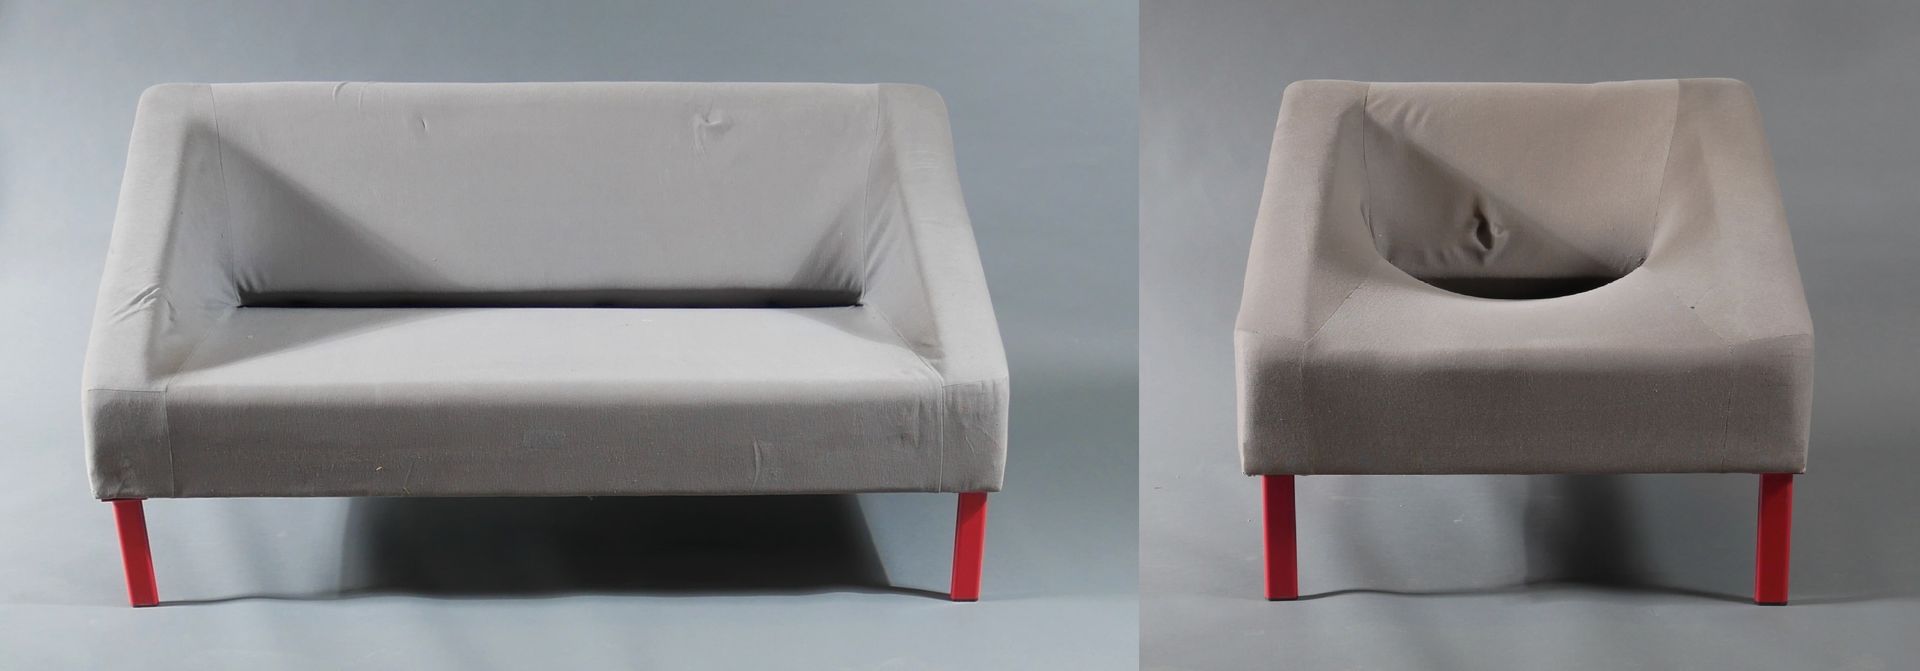 Null *Sofa und Chauffeuse aus Stoff mit rot lackierten Metallfüßen.

Sofa H: 73,&hellip;